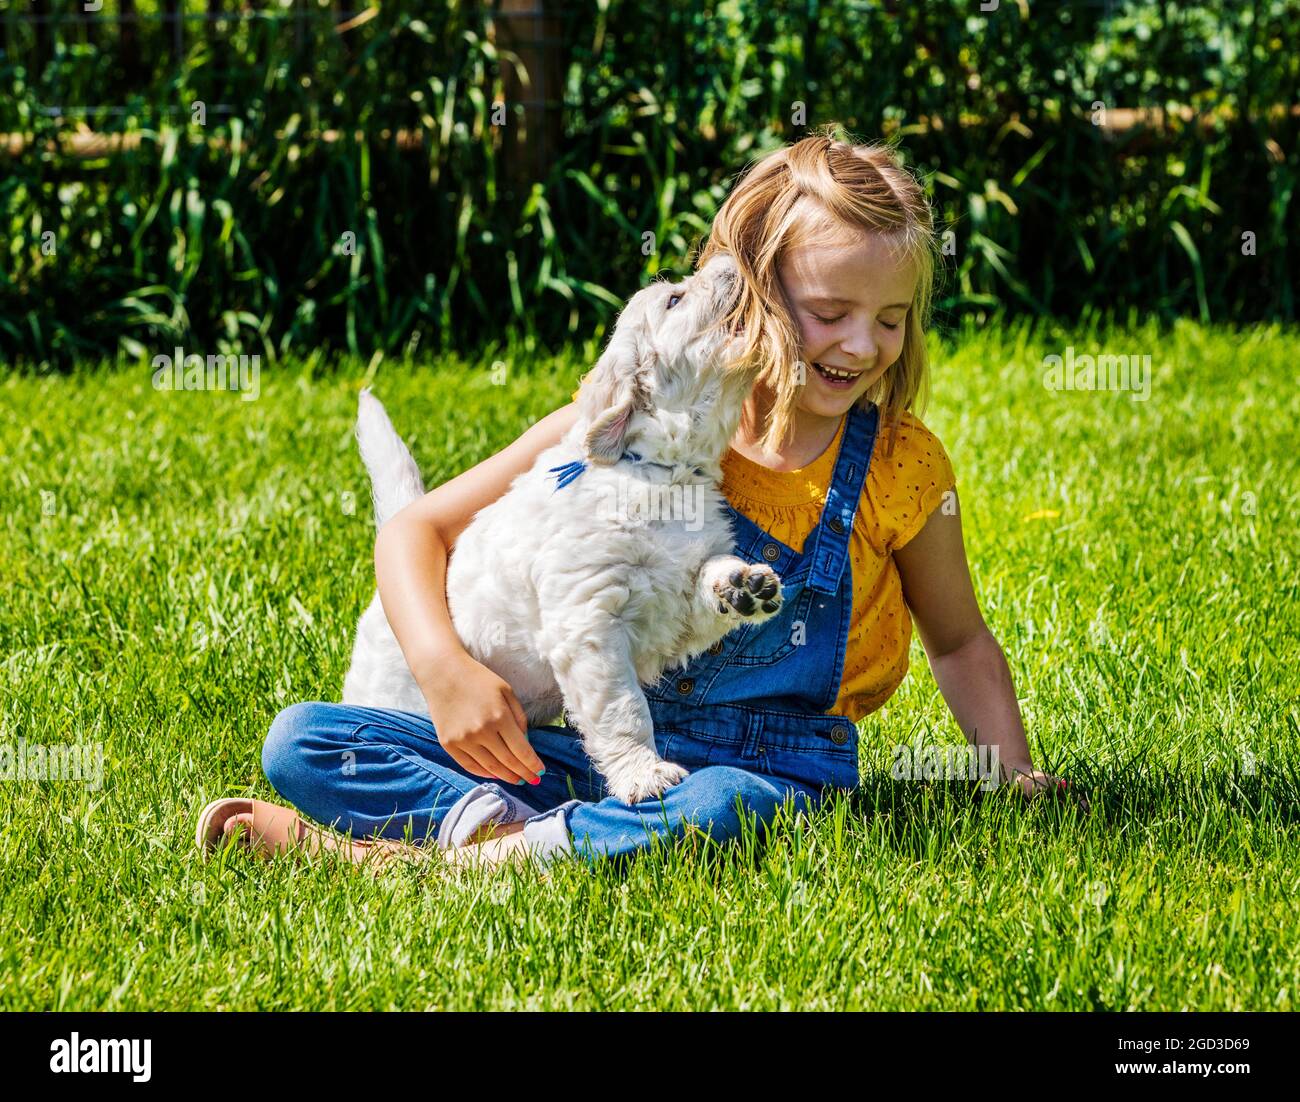 Junges Mädchen, das mit sechs Wochen alten Platinum- oder Cream Coloured Golden Retriever-Welpen auf Gras spielt. Stockfoto